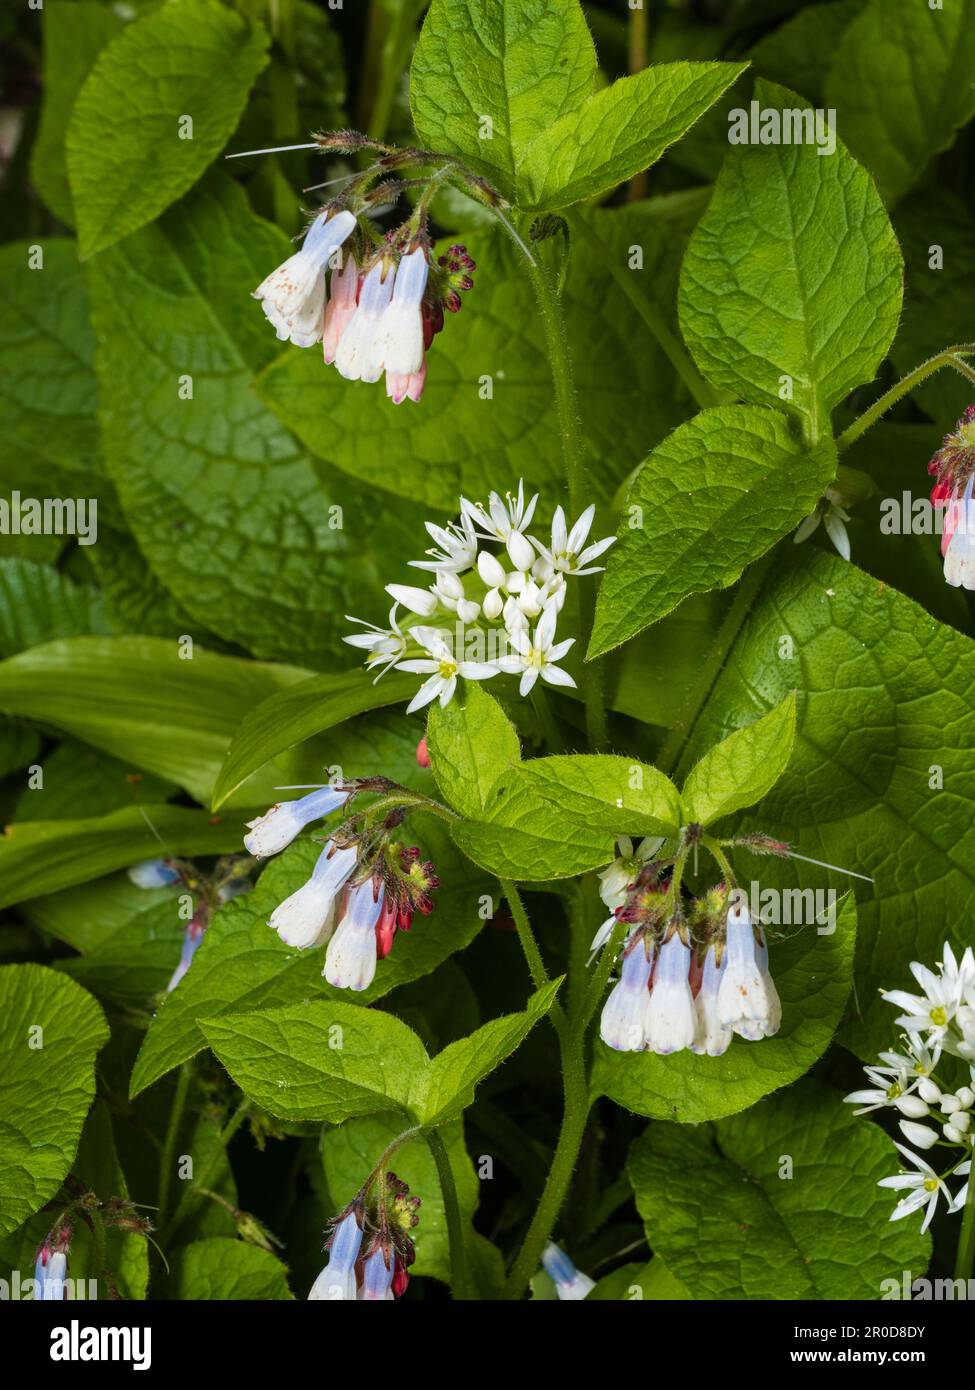 Fleurs de printemps bleues et blanches du sol couvrant la vivace robuste Symphytum 'Hidcote Blue' se mêlent à l'ail sauvage, Allium ursinum Banque D'Images